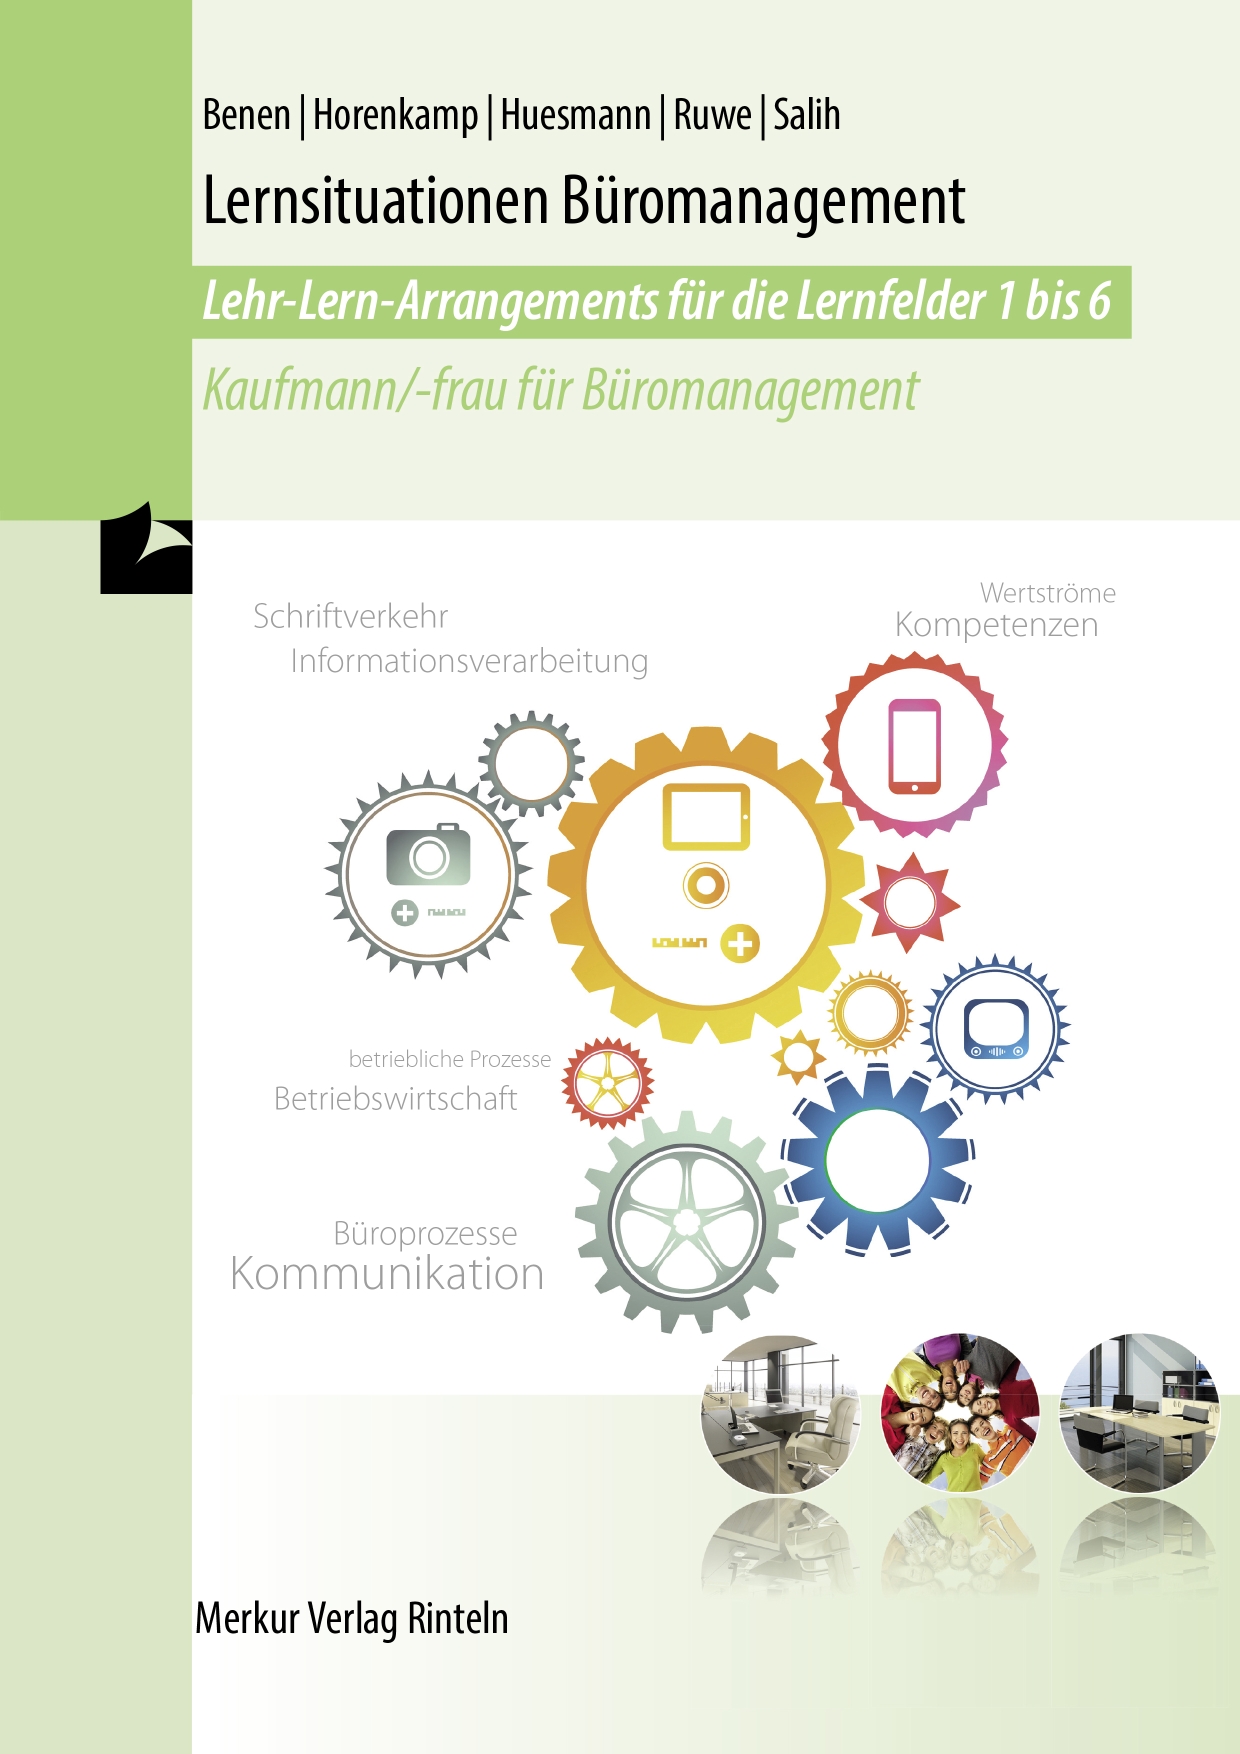 Lernsituationen Büromanagement Lehr-Lern-Arrangements für die Lernfelder 1-6